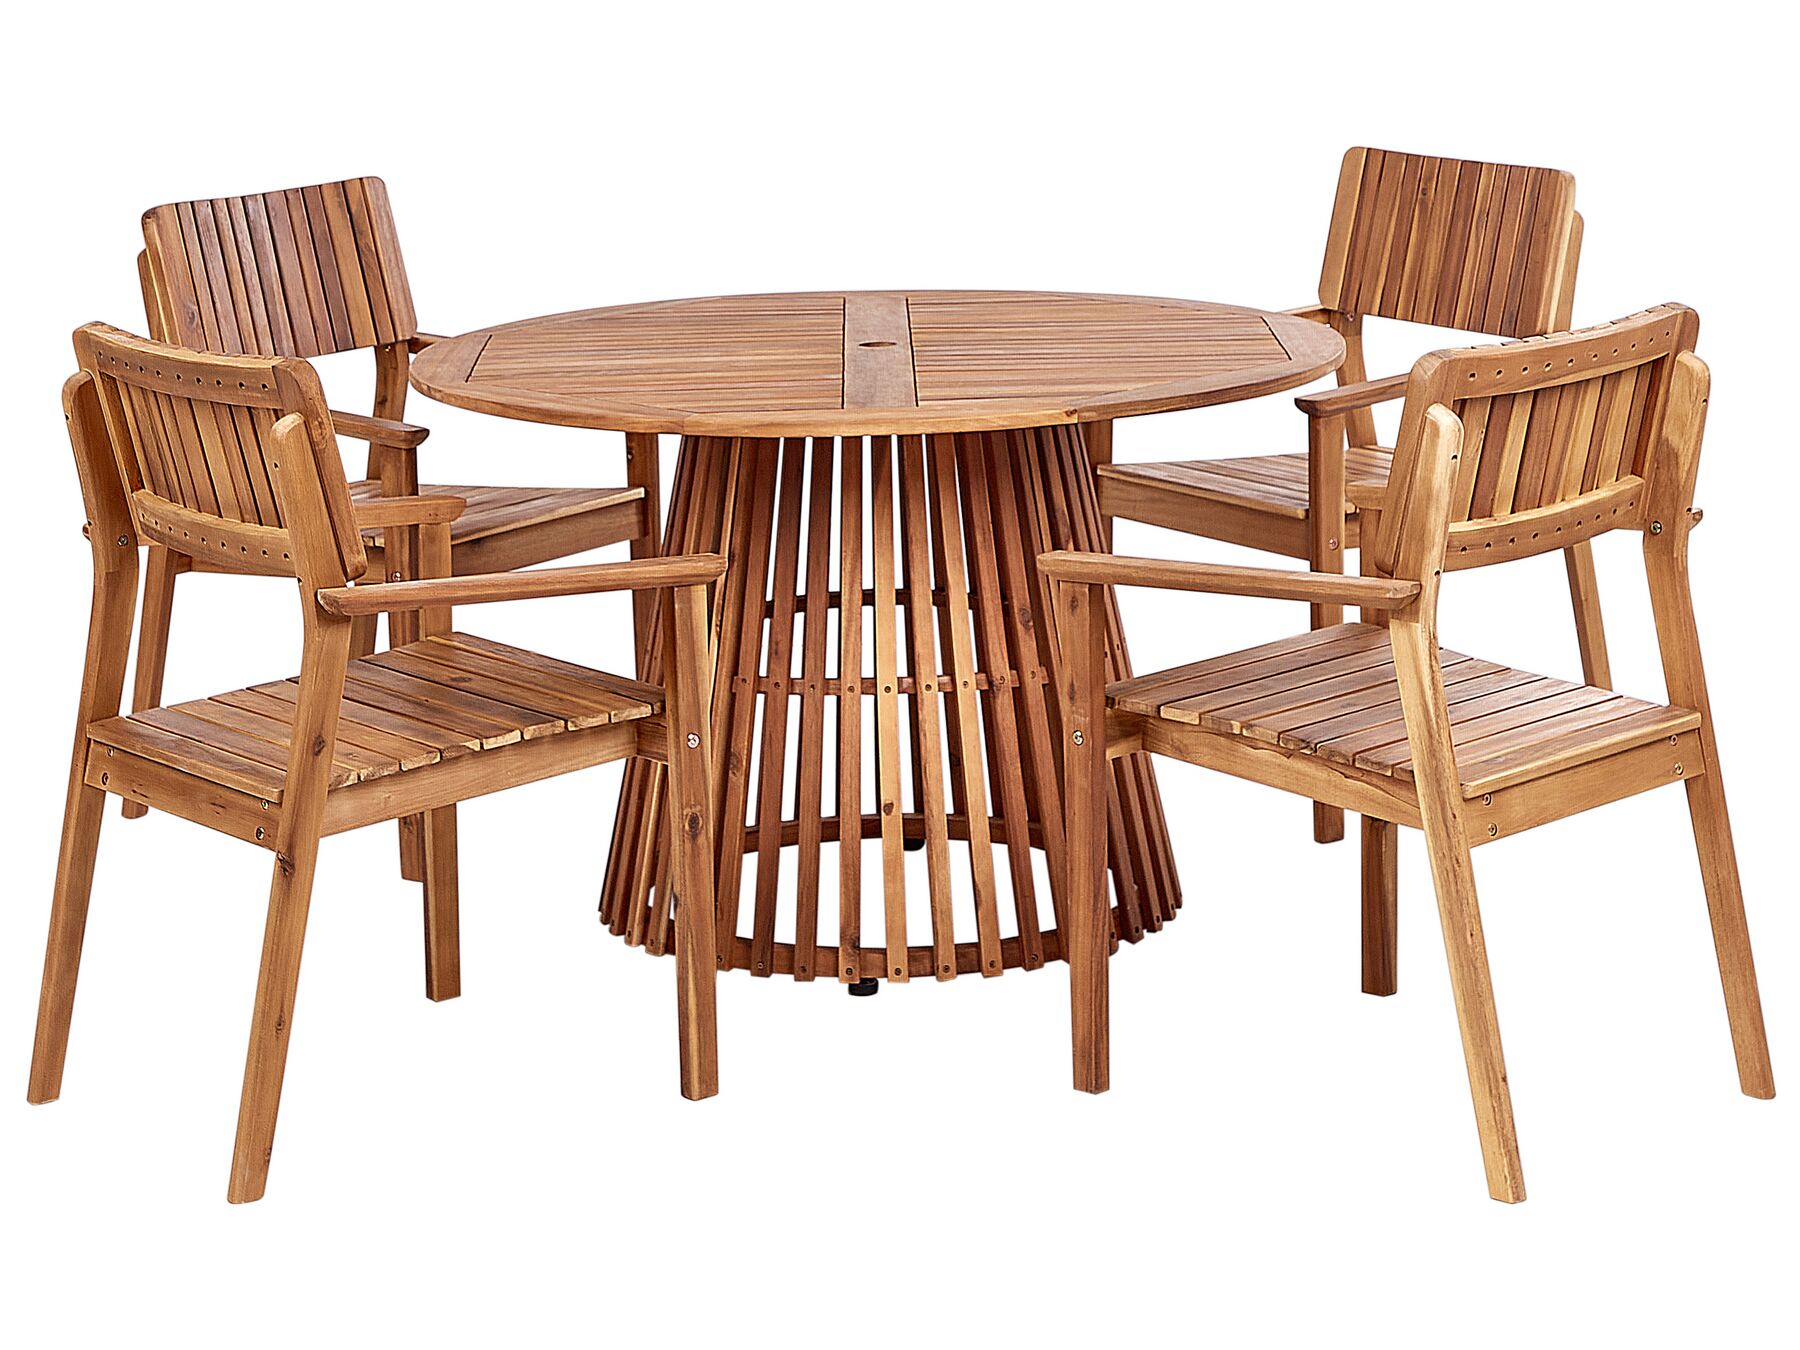 Zestaw ogrodowy drewniany stół i 4 krzesła AGELLO_923496